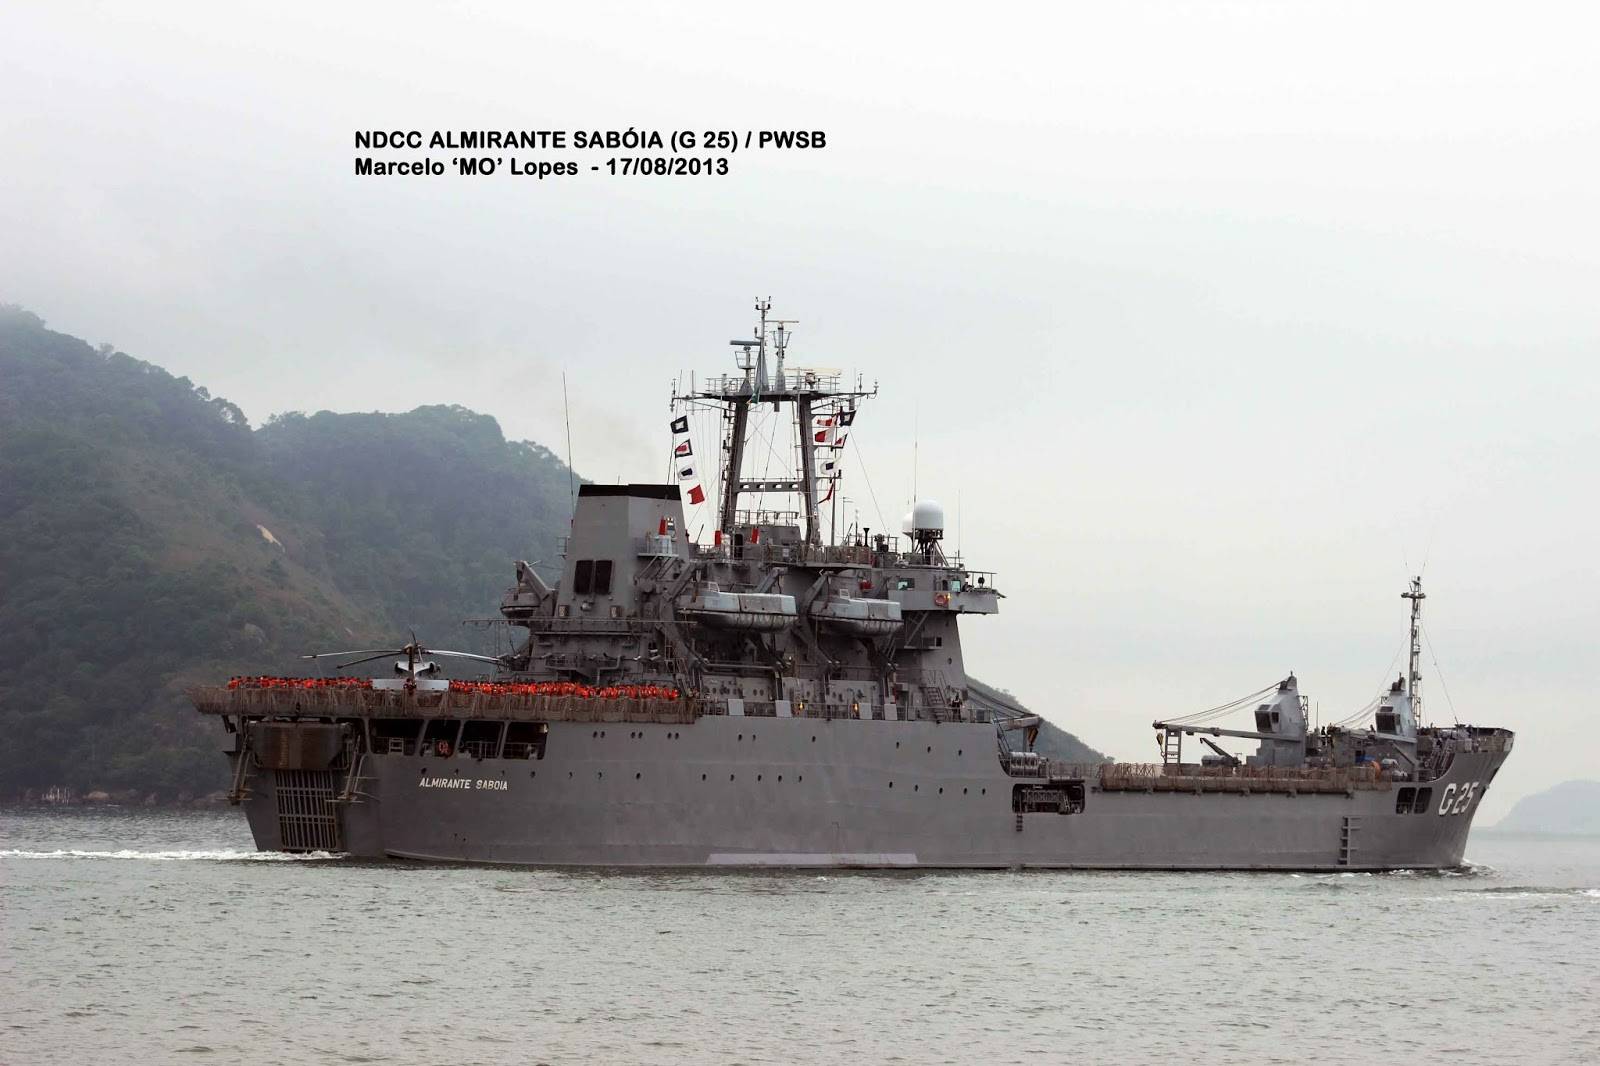 O Almirante Sabóia, em 3/4 de popa,  deixando o porto de Santos em 17 de agosto de 2013, com destaque para a aeronave MH-16 Seahawk. (foto: Marcelo M. Lopes da Silva)